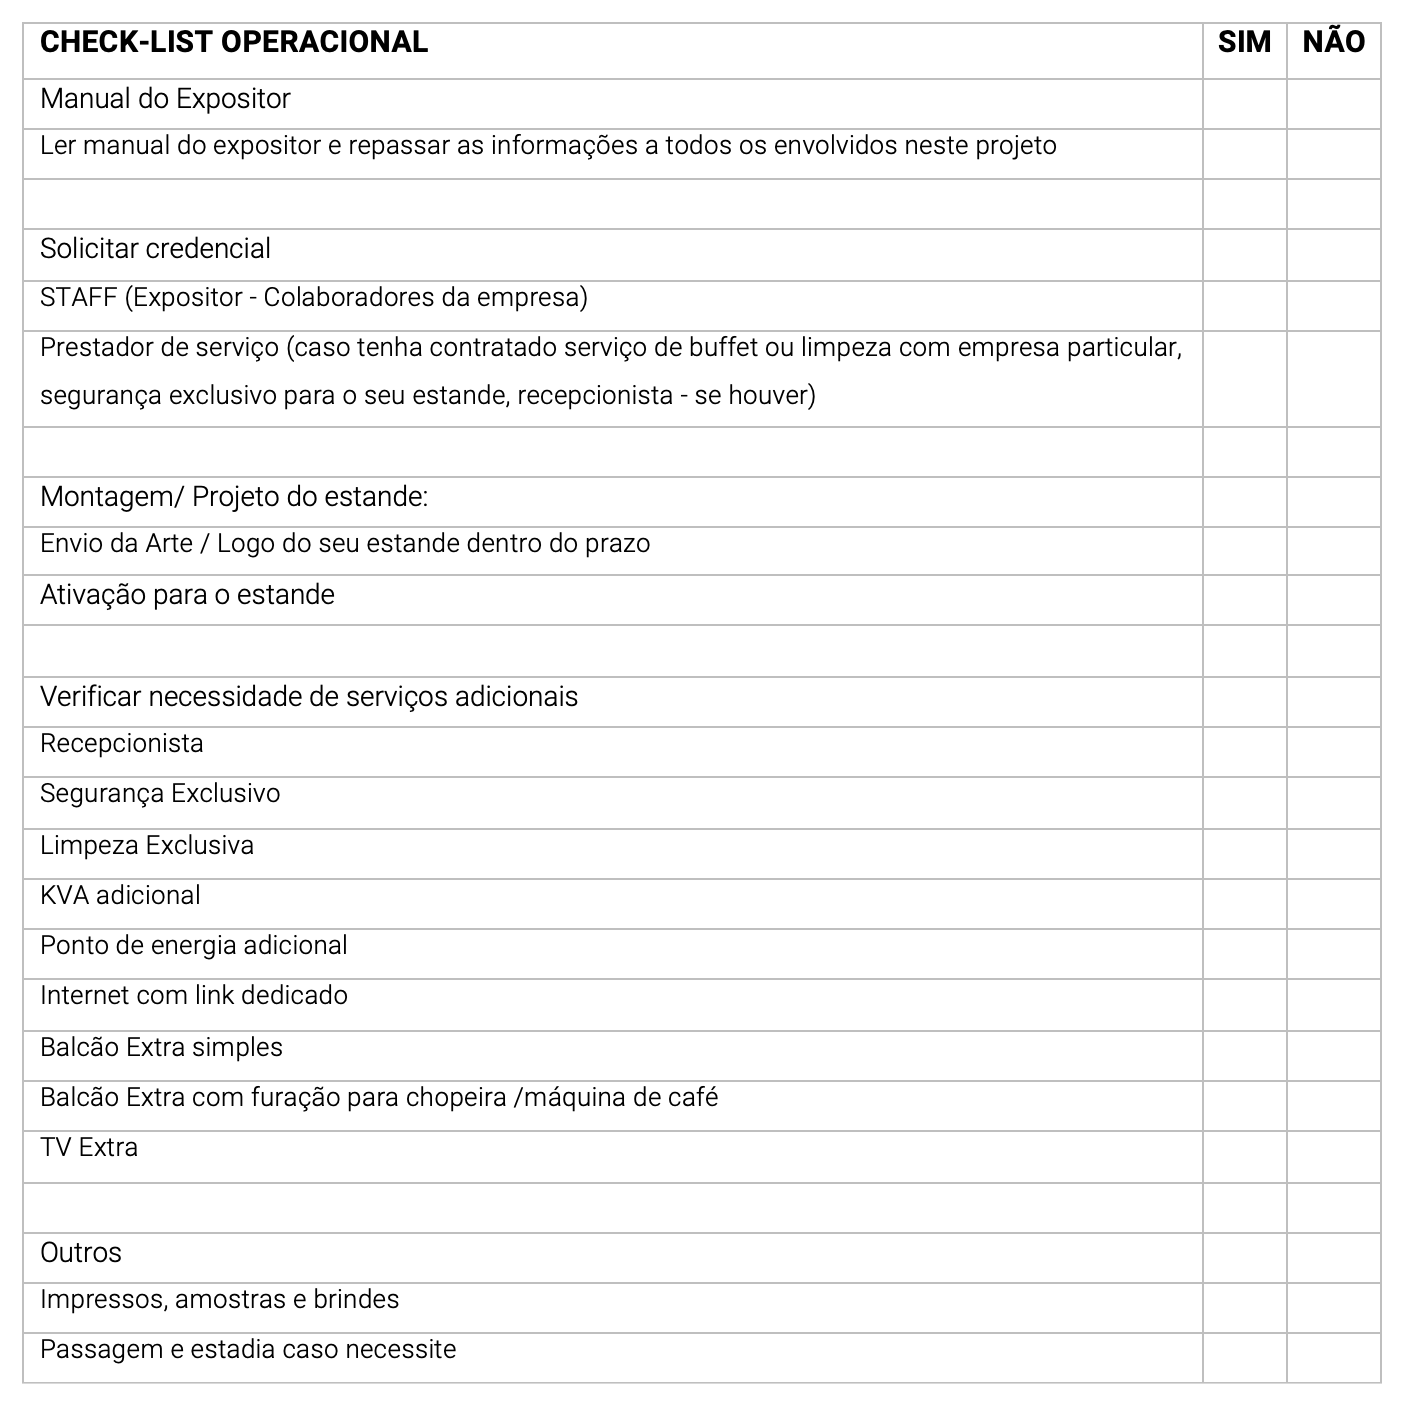 Checklist Operacional - Expo